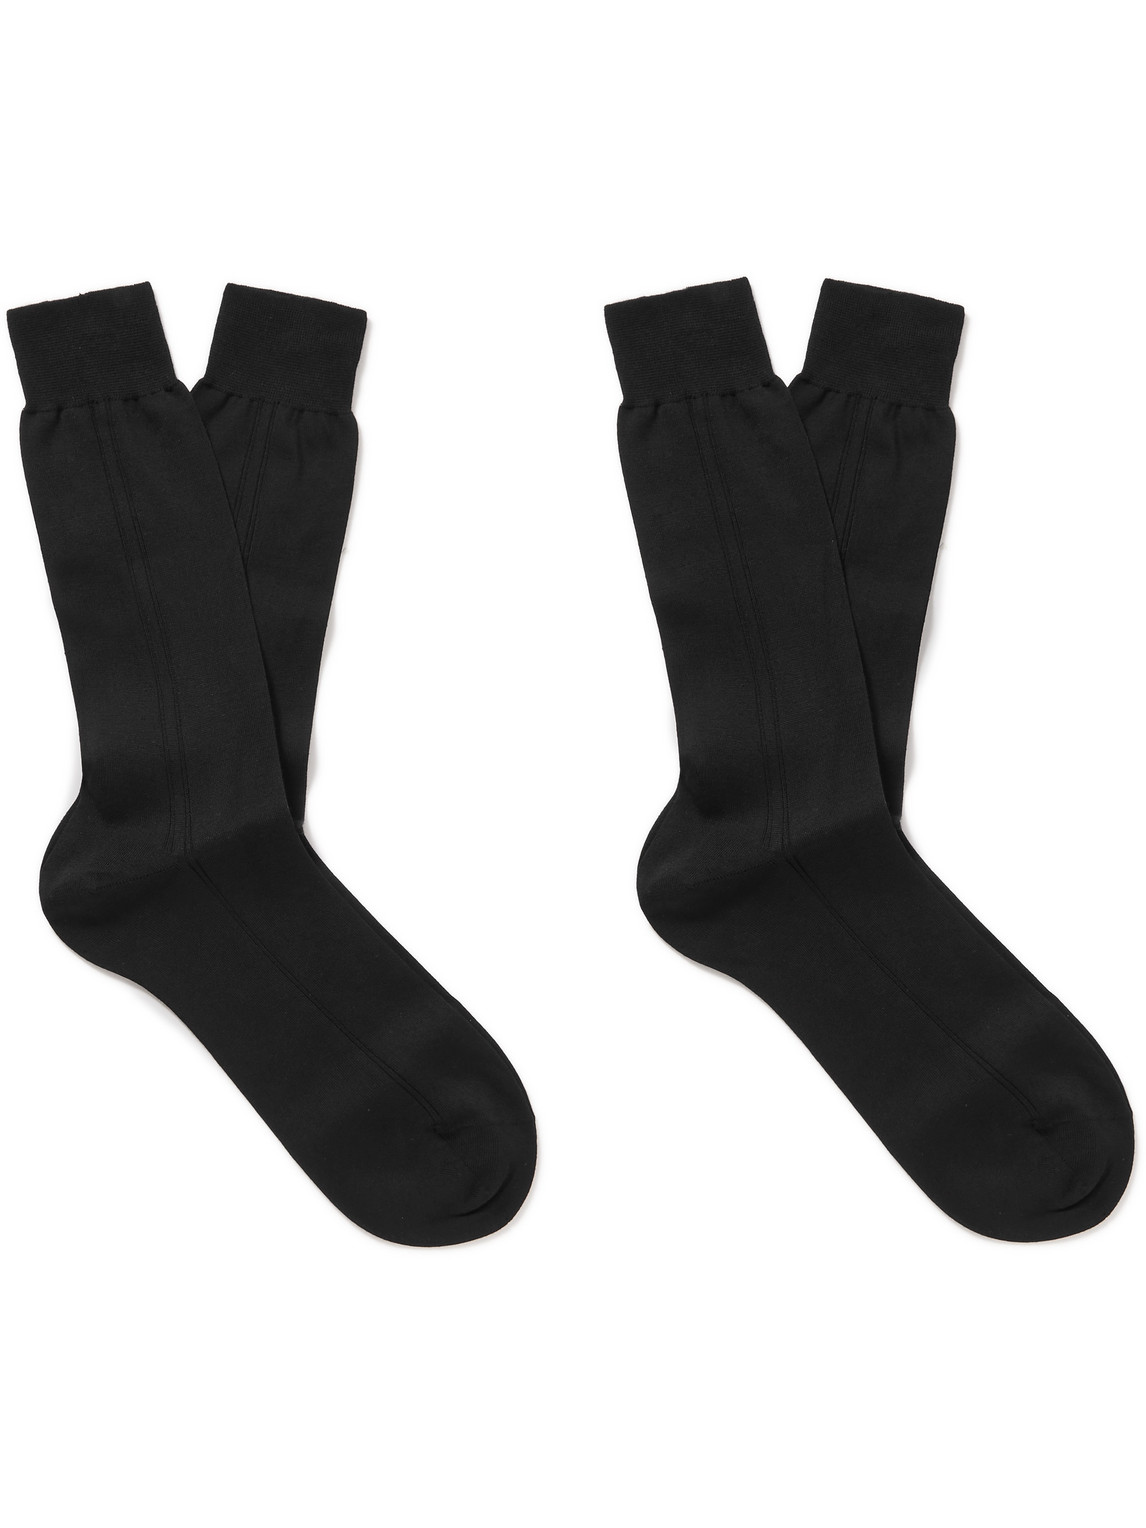 Mr P Ribbed Cotton Socks In Black